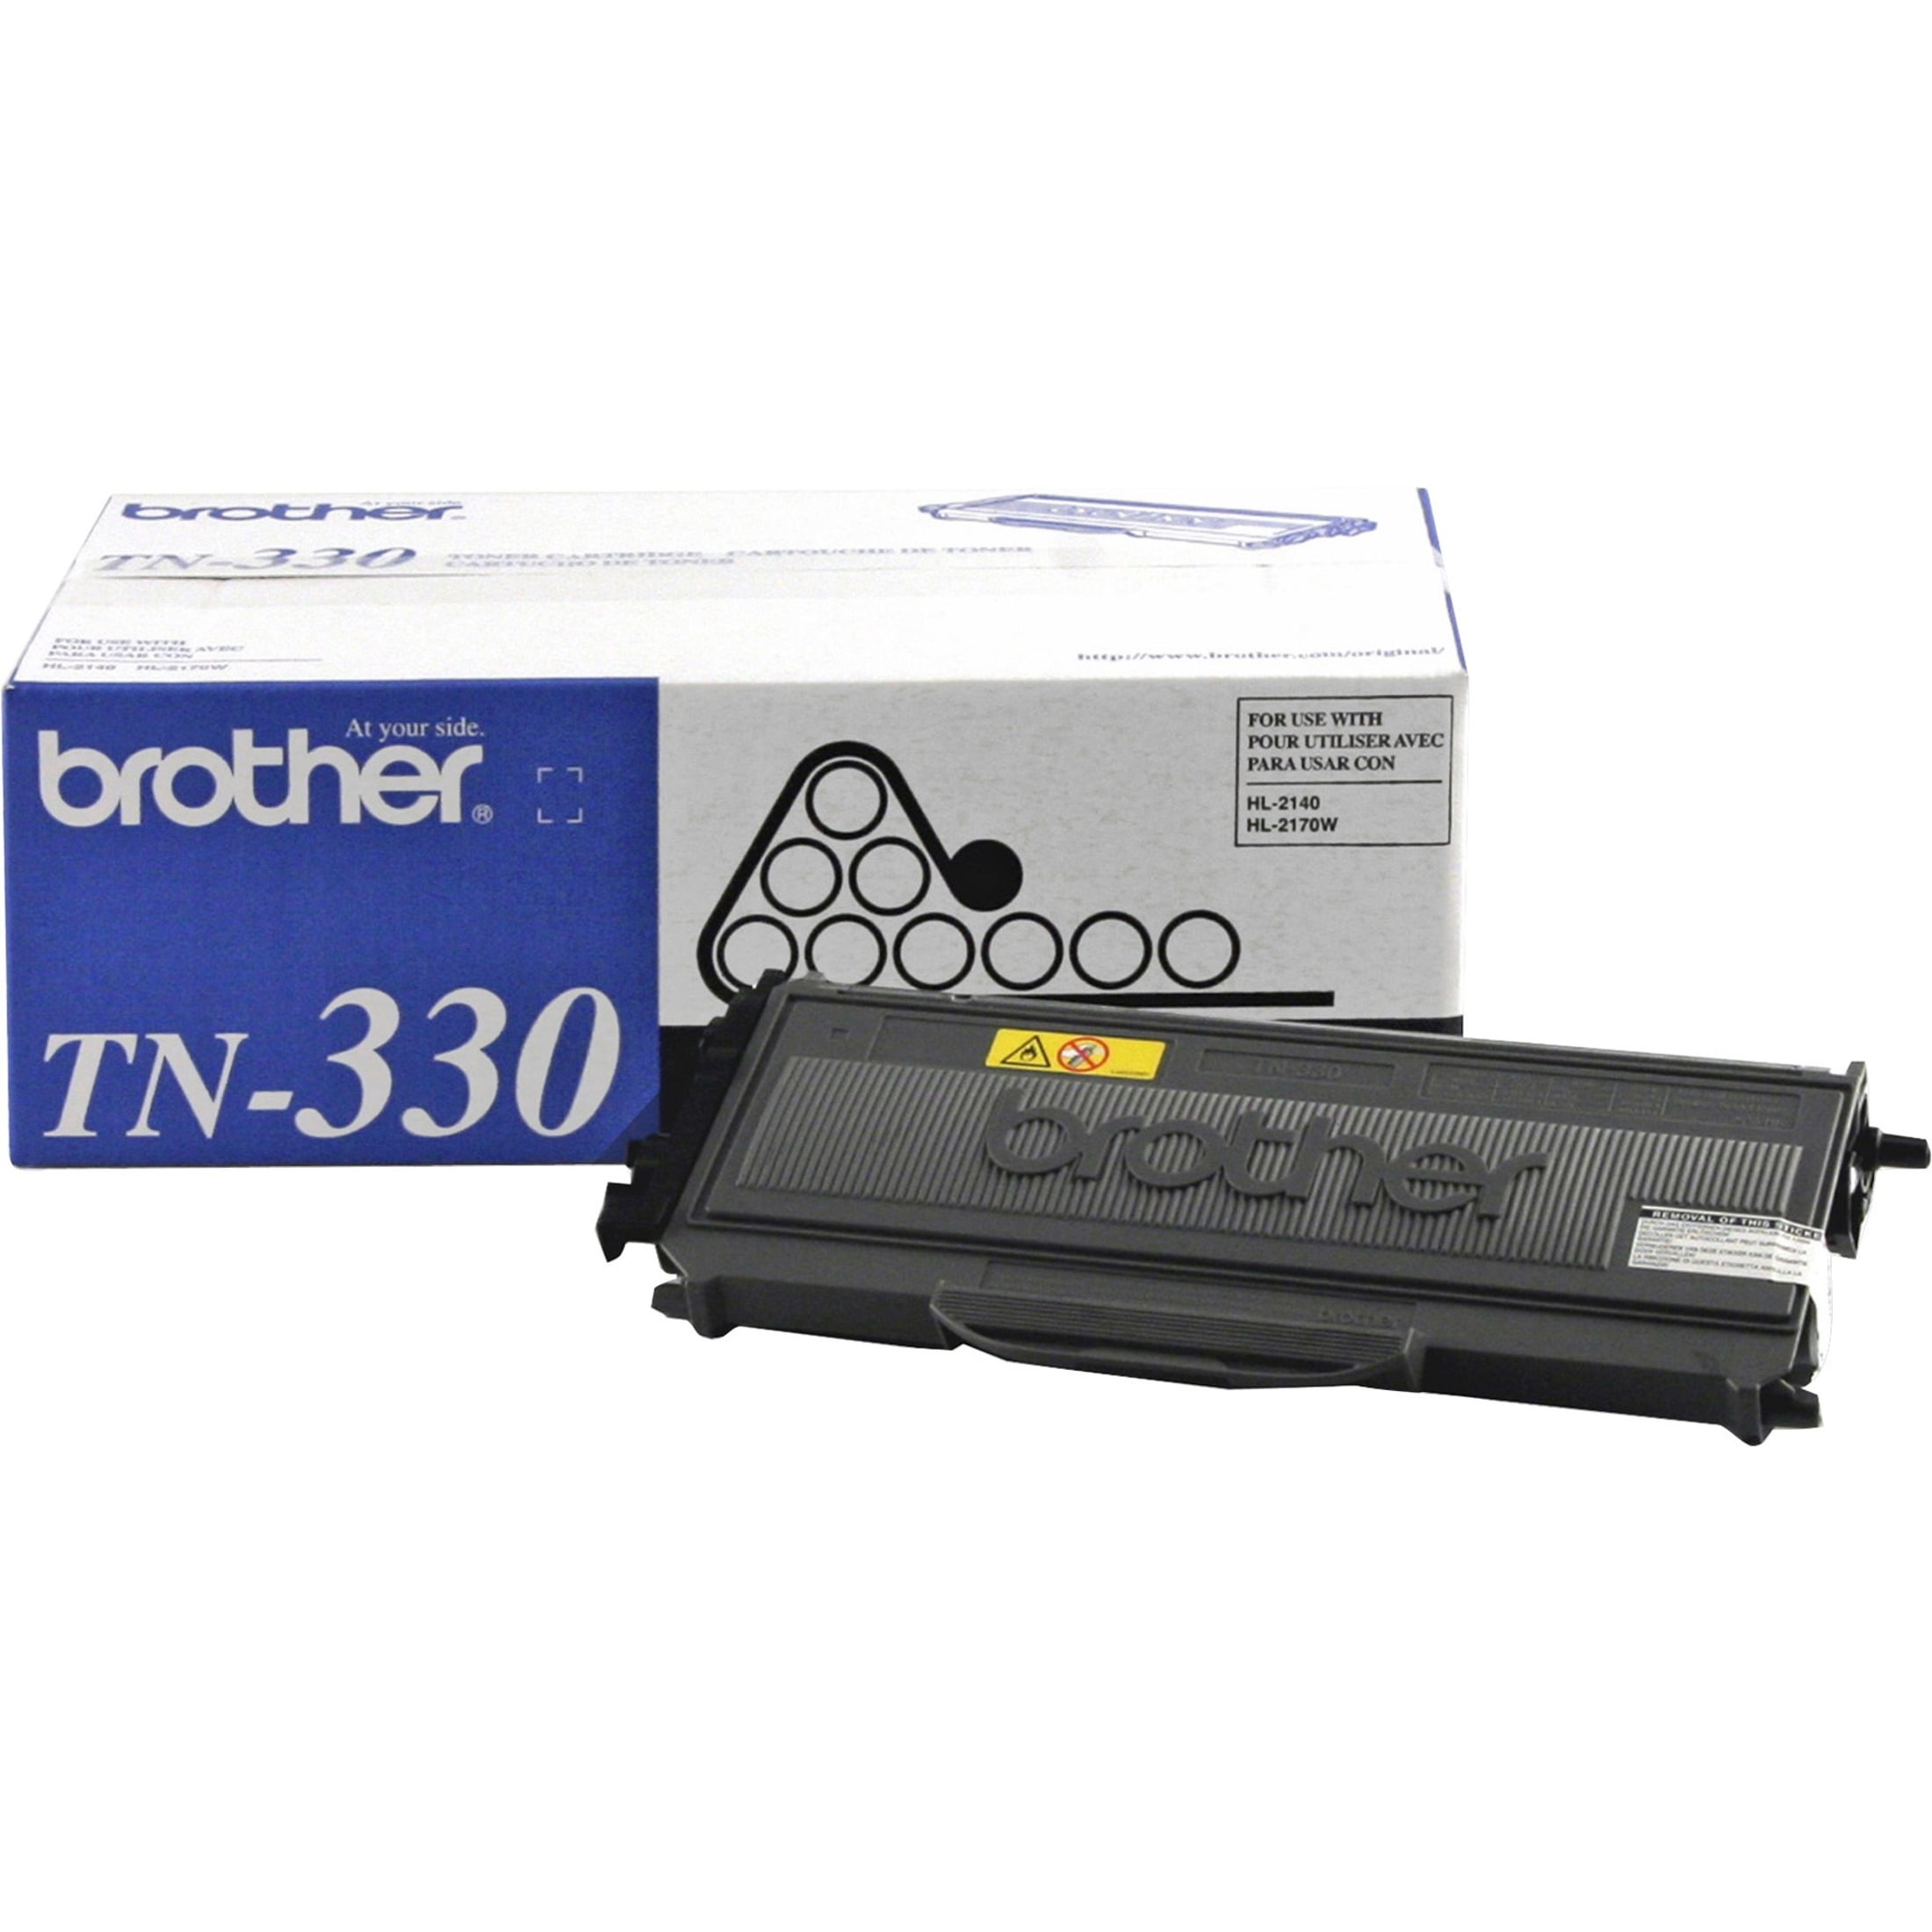 Toner Brother TN-2420 pour HL-L2310D, noir 3000 pages